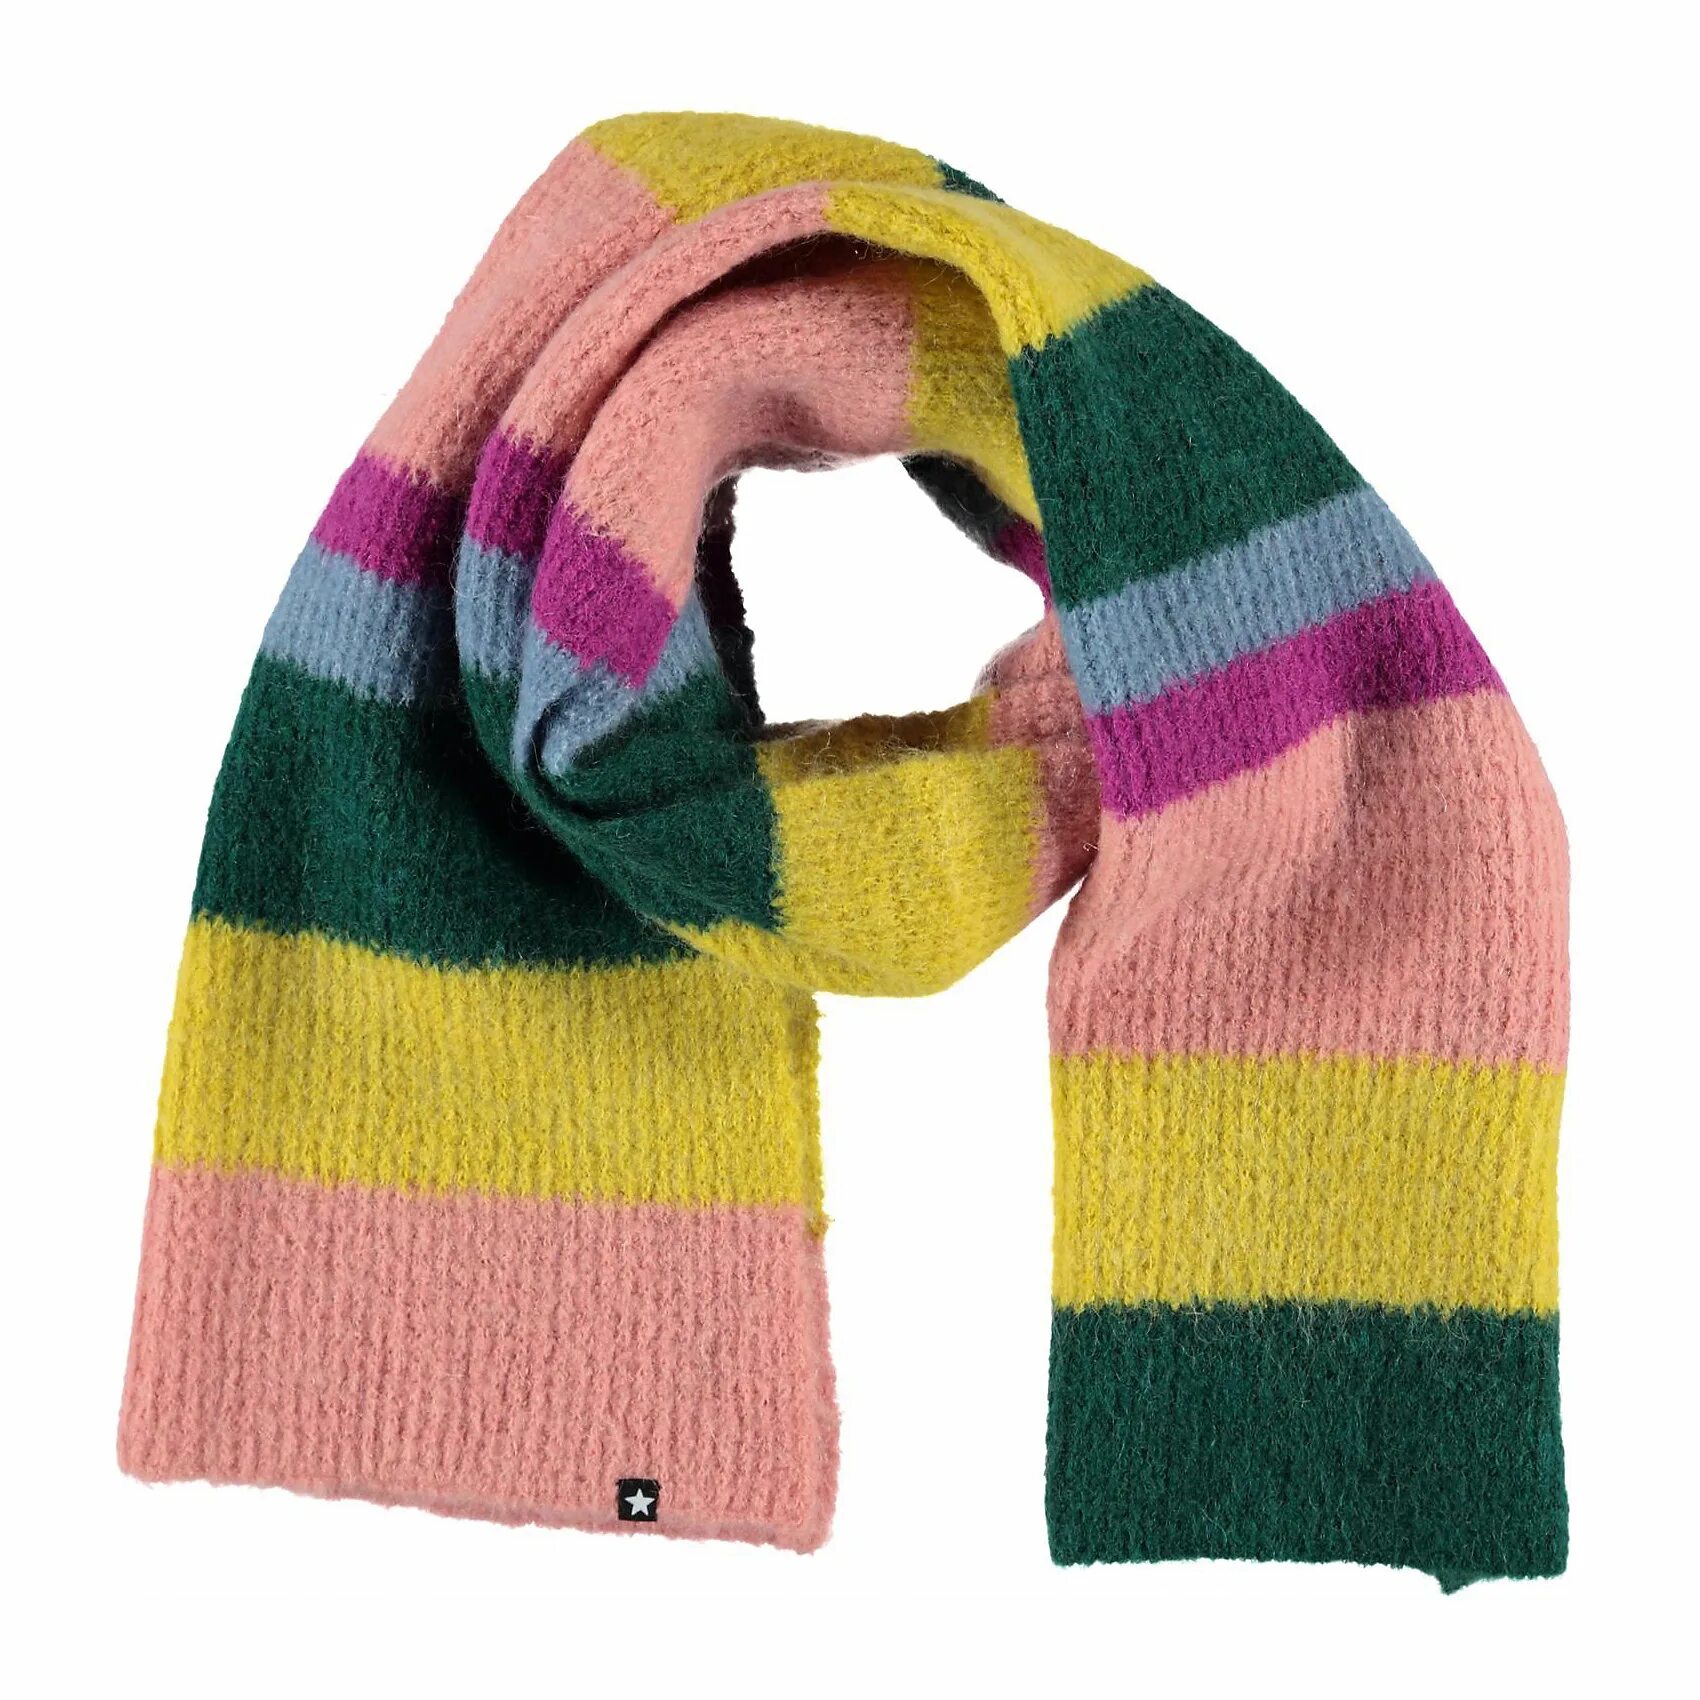 Шарф Molo. Разноцветный шарф. Шарф детский разноцветный. Разноцветные шарфики для детей.